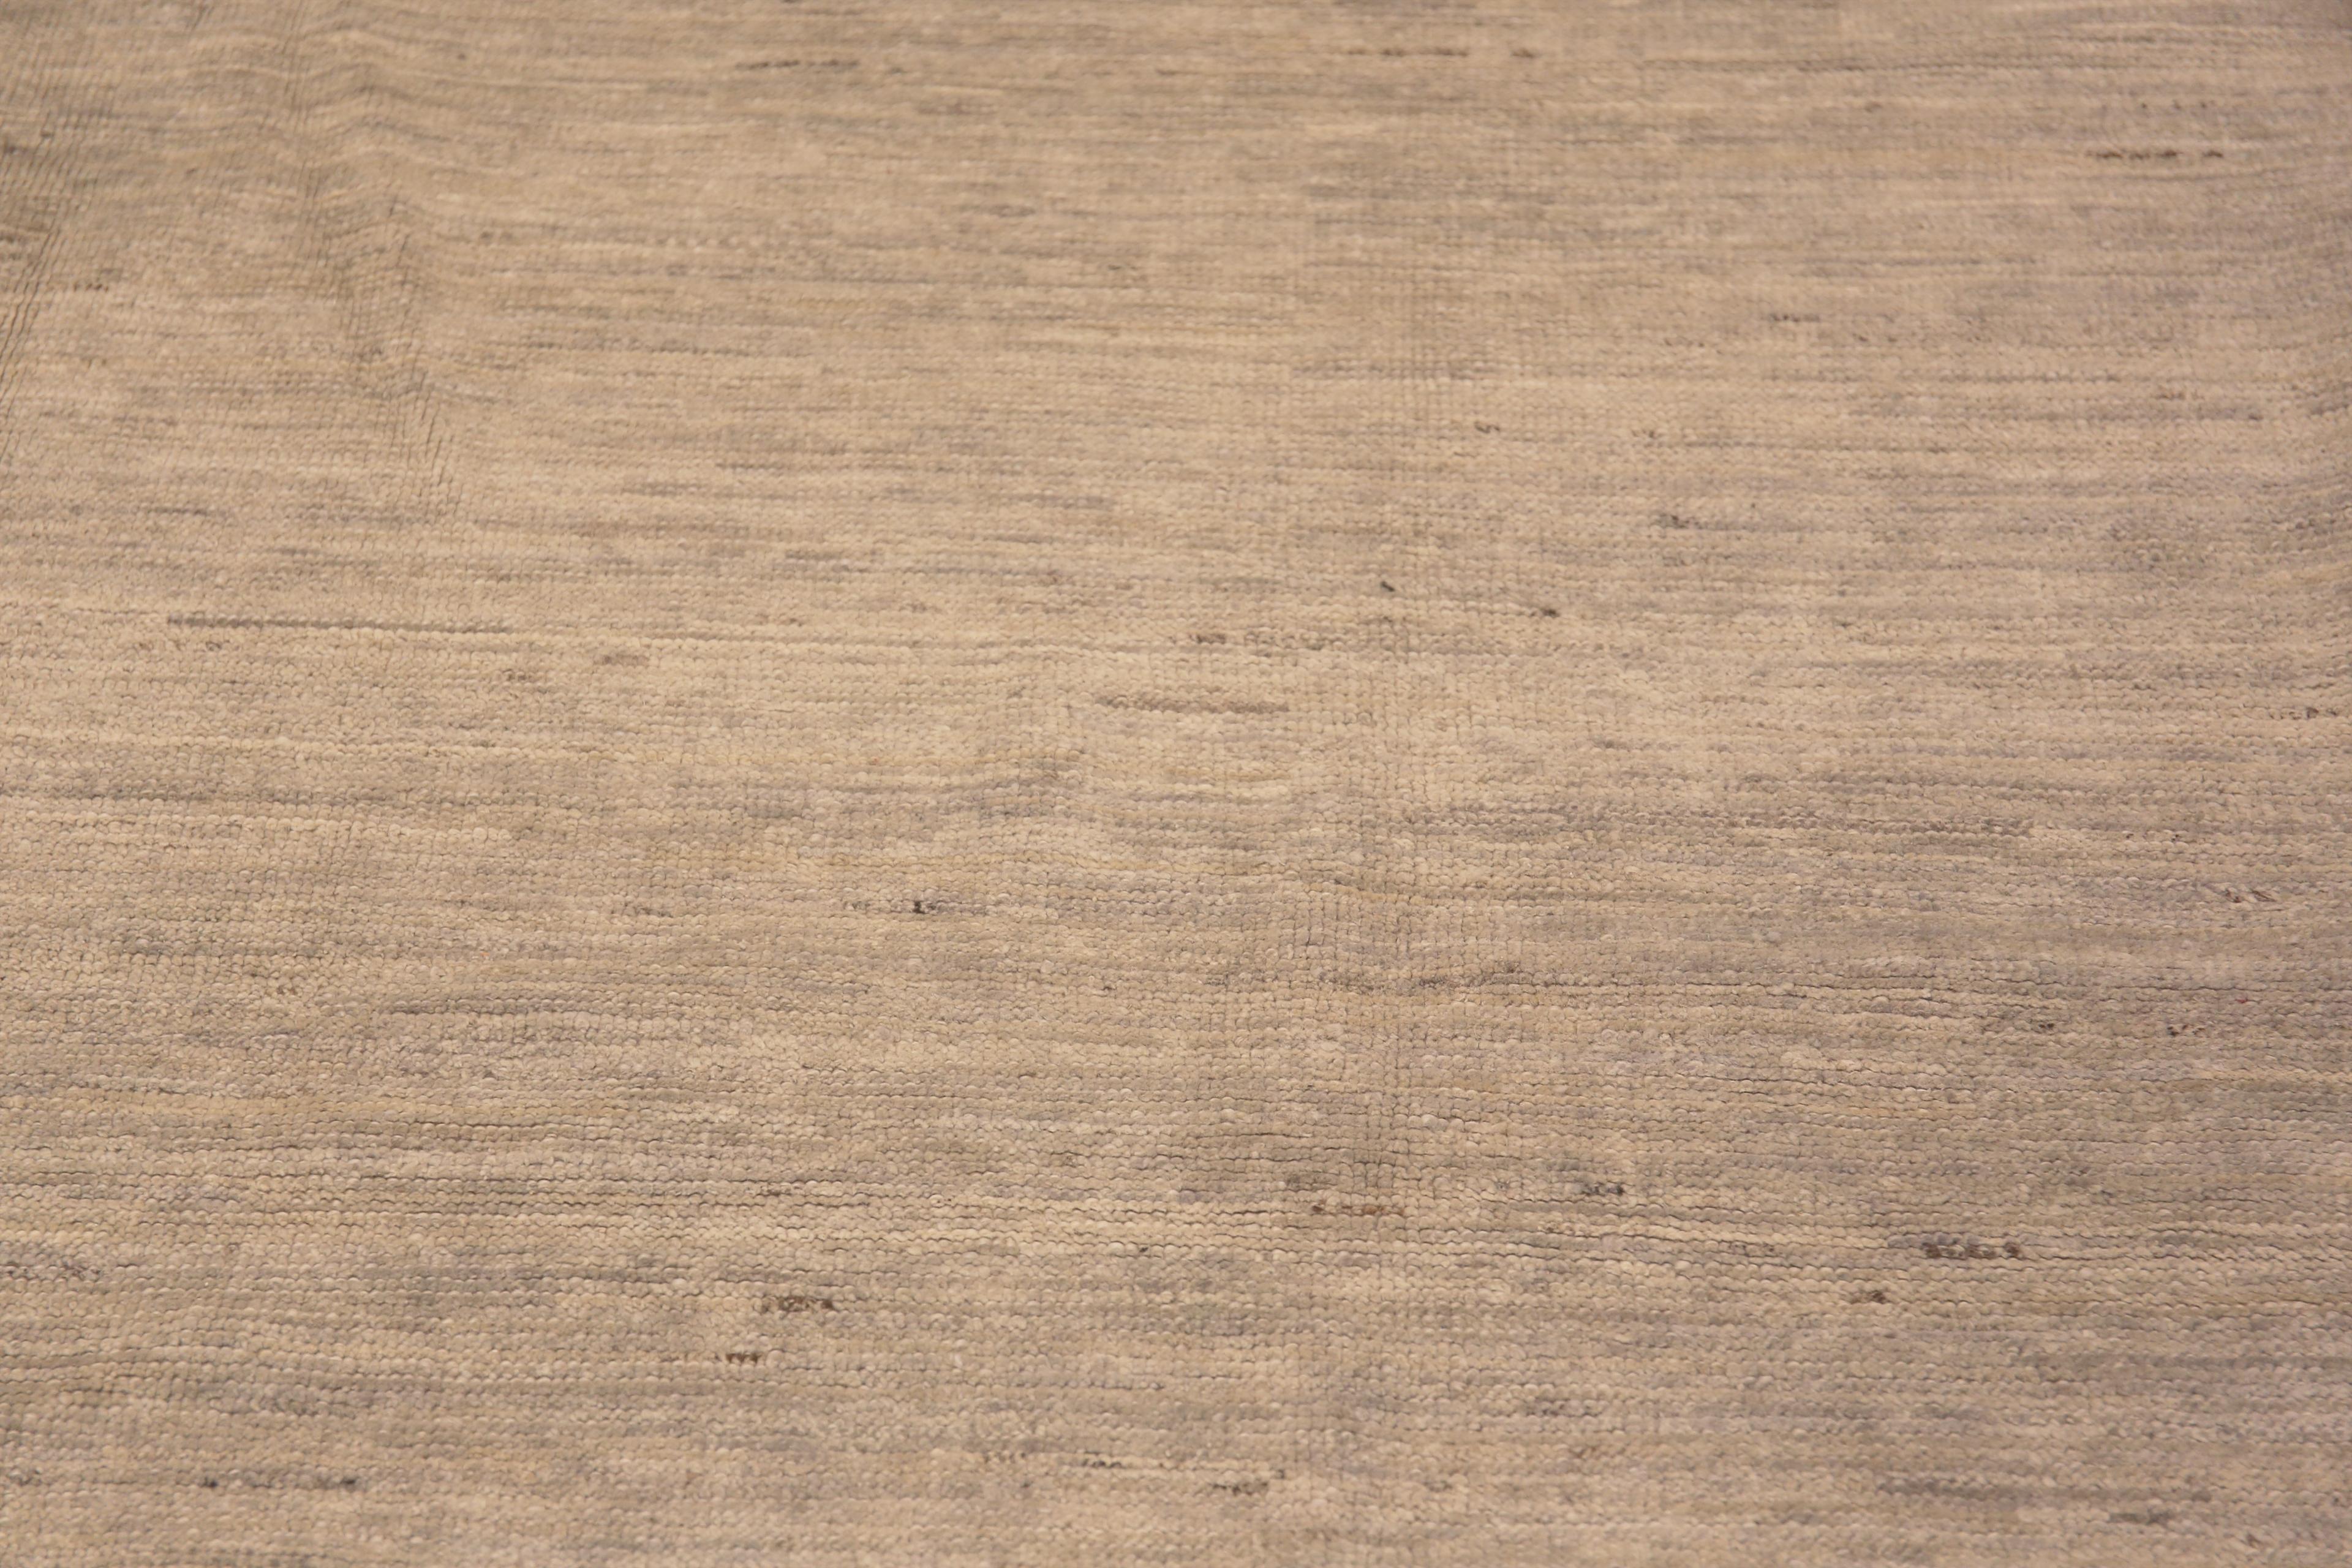 Tapis de sol minimaliste et décoratif, couleur crème ivoire clair, de taille moderne, Pays d'origine : Asie centrale, Circa Date : Tapis moderne